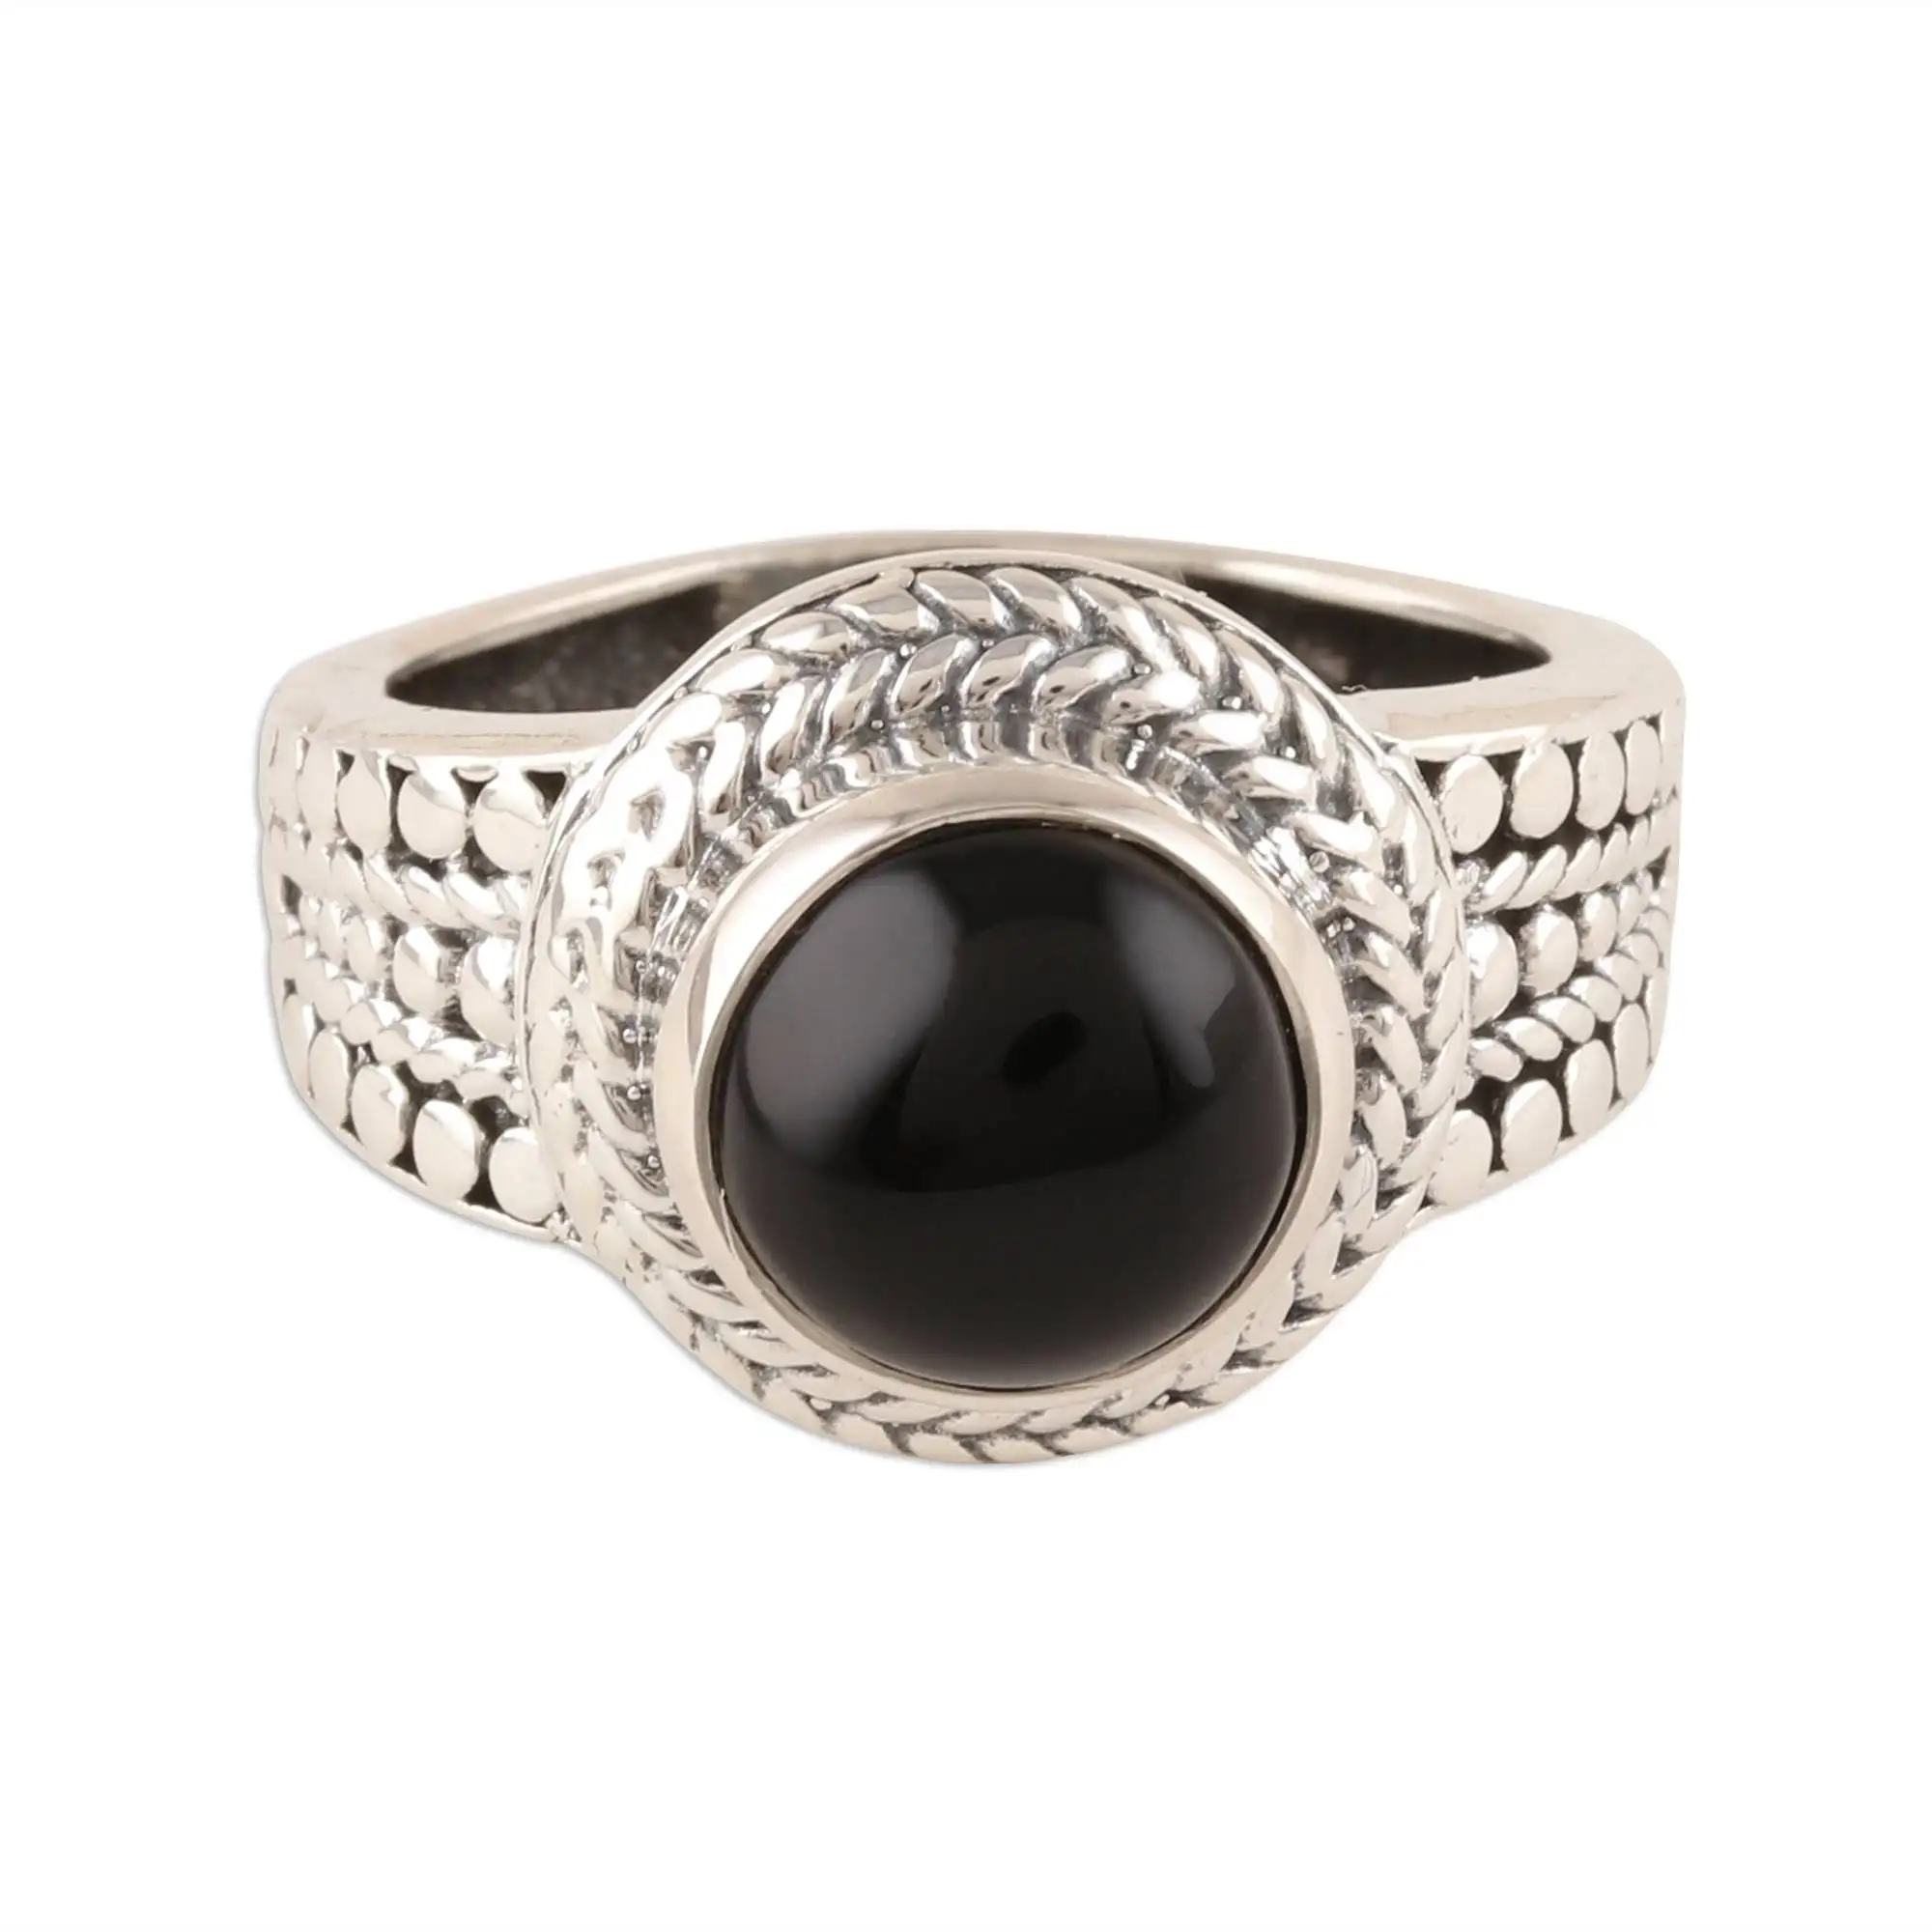 חדש עוצב שחור אוניקס טבעת בעבודת יד תכשיטי מוצק 925 כסף סטרלינג טבעות הודי תכשיטים סיטונאי מחיר טבעת